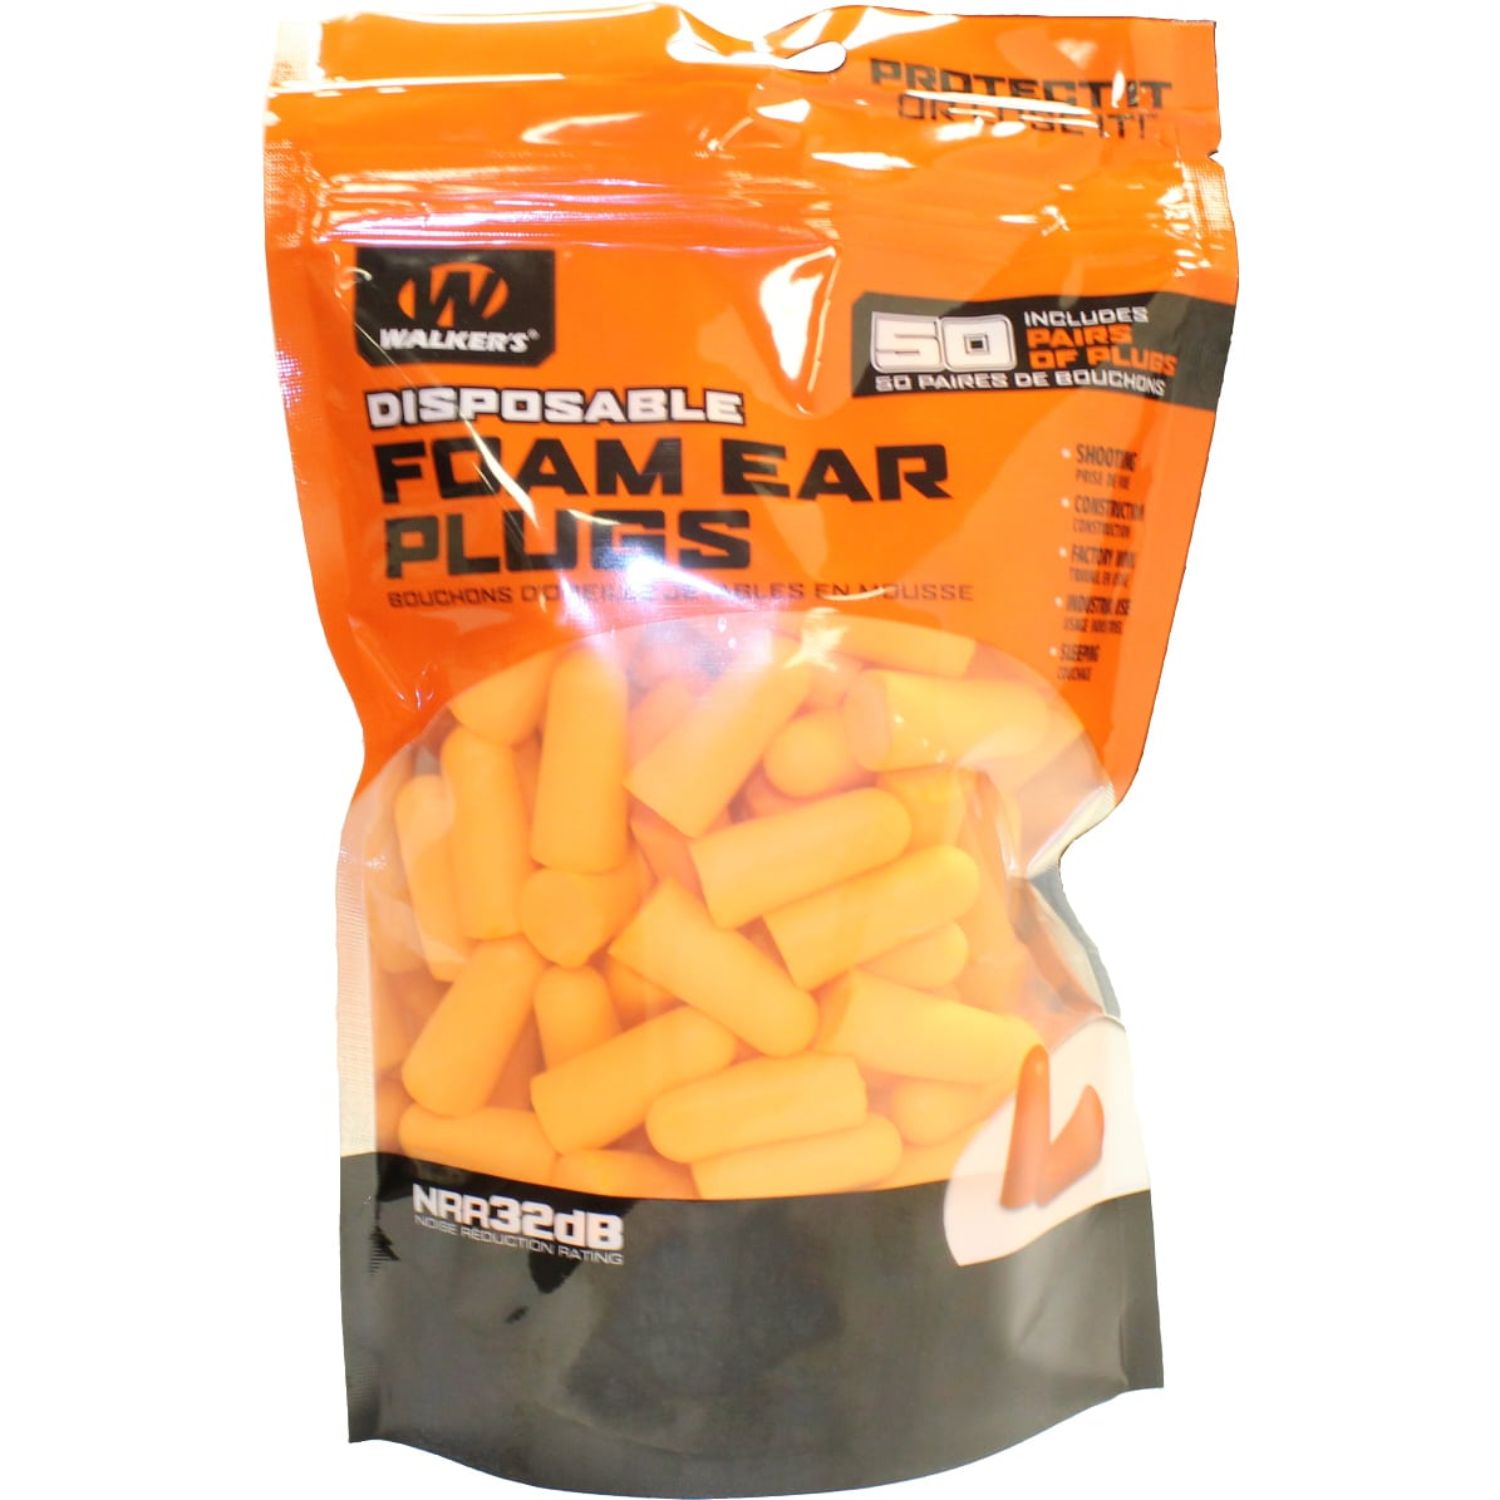 FOAM EAR PLUGS  50 PAIR BAG